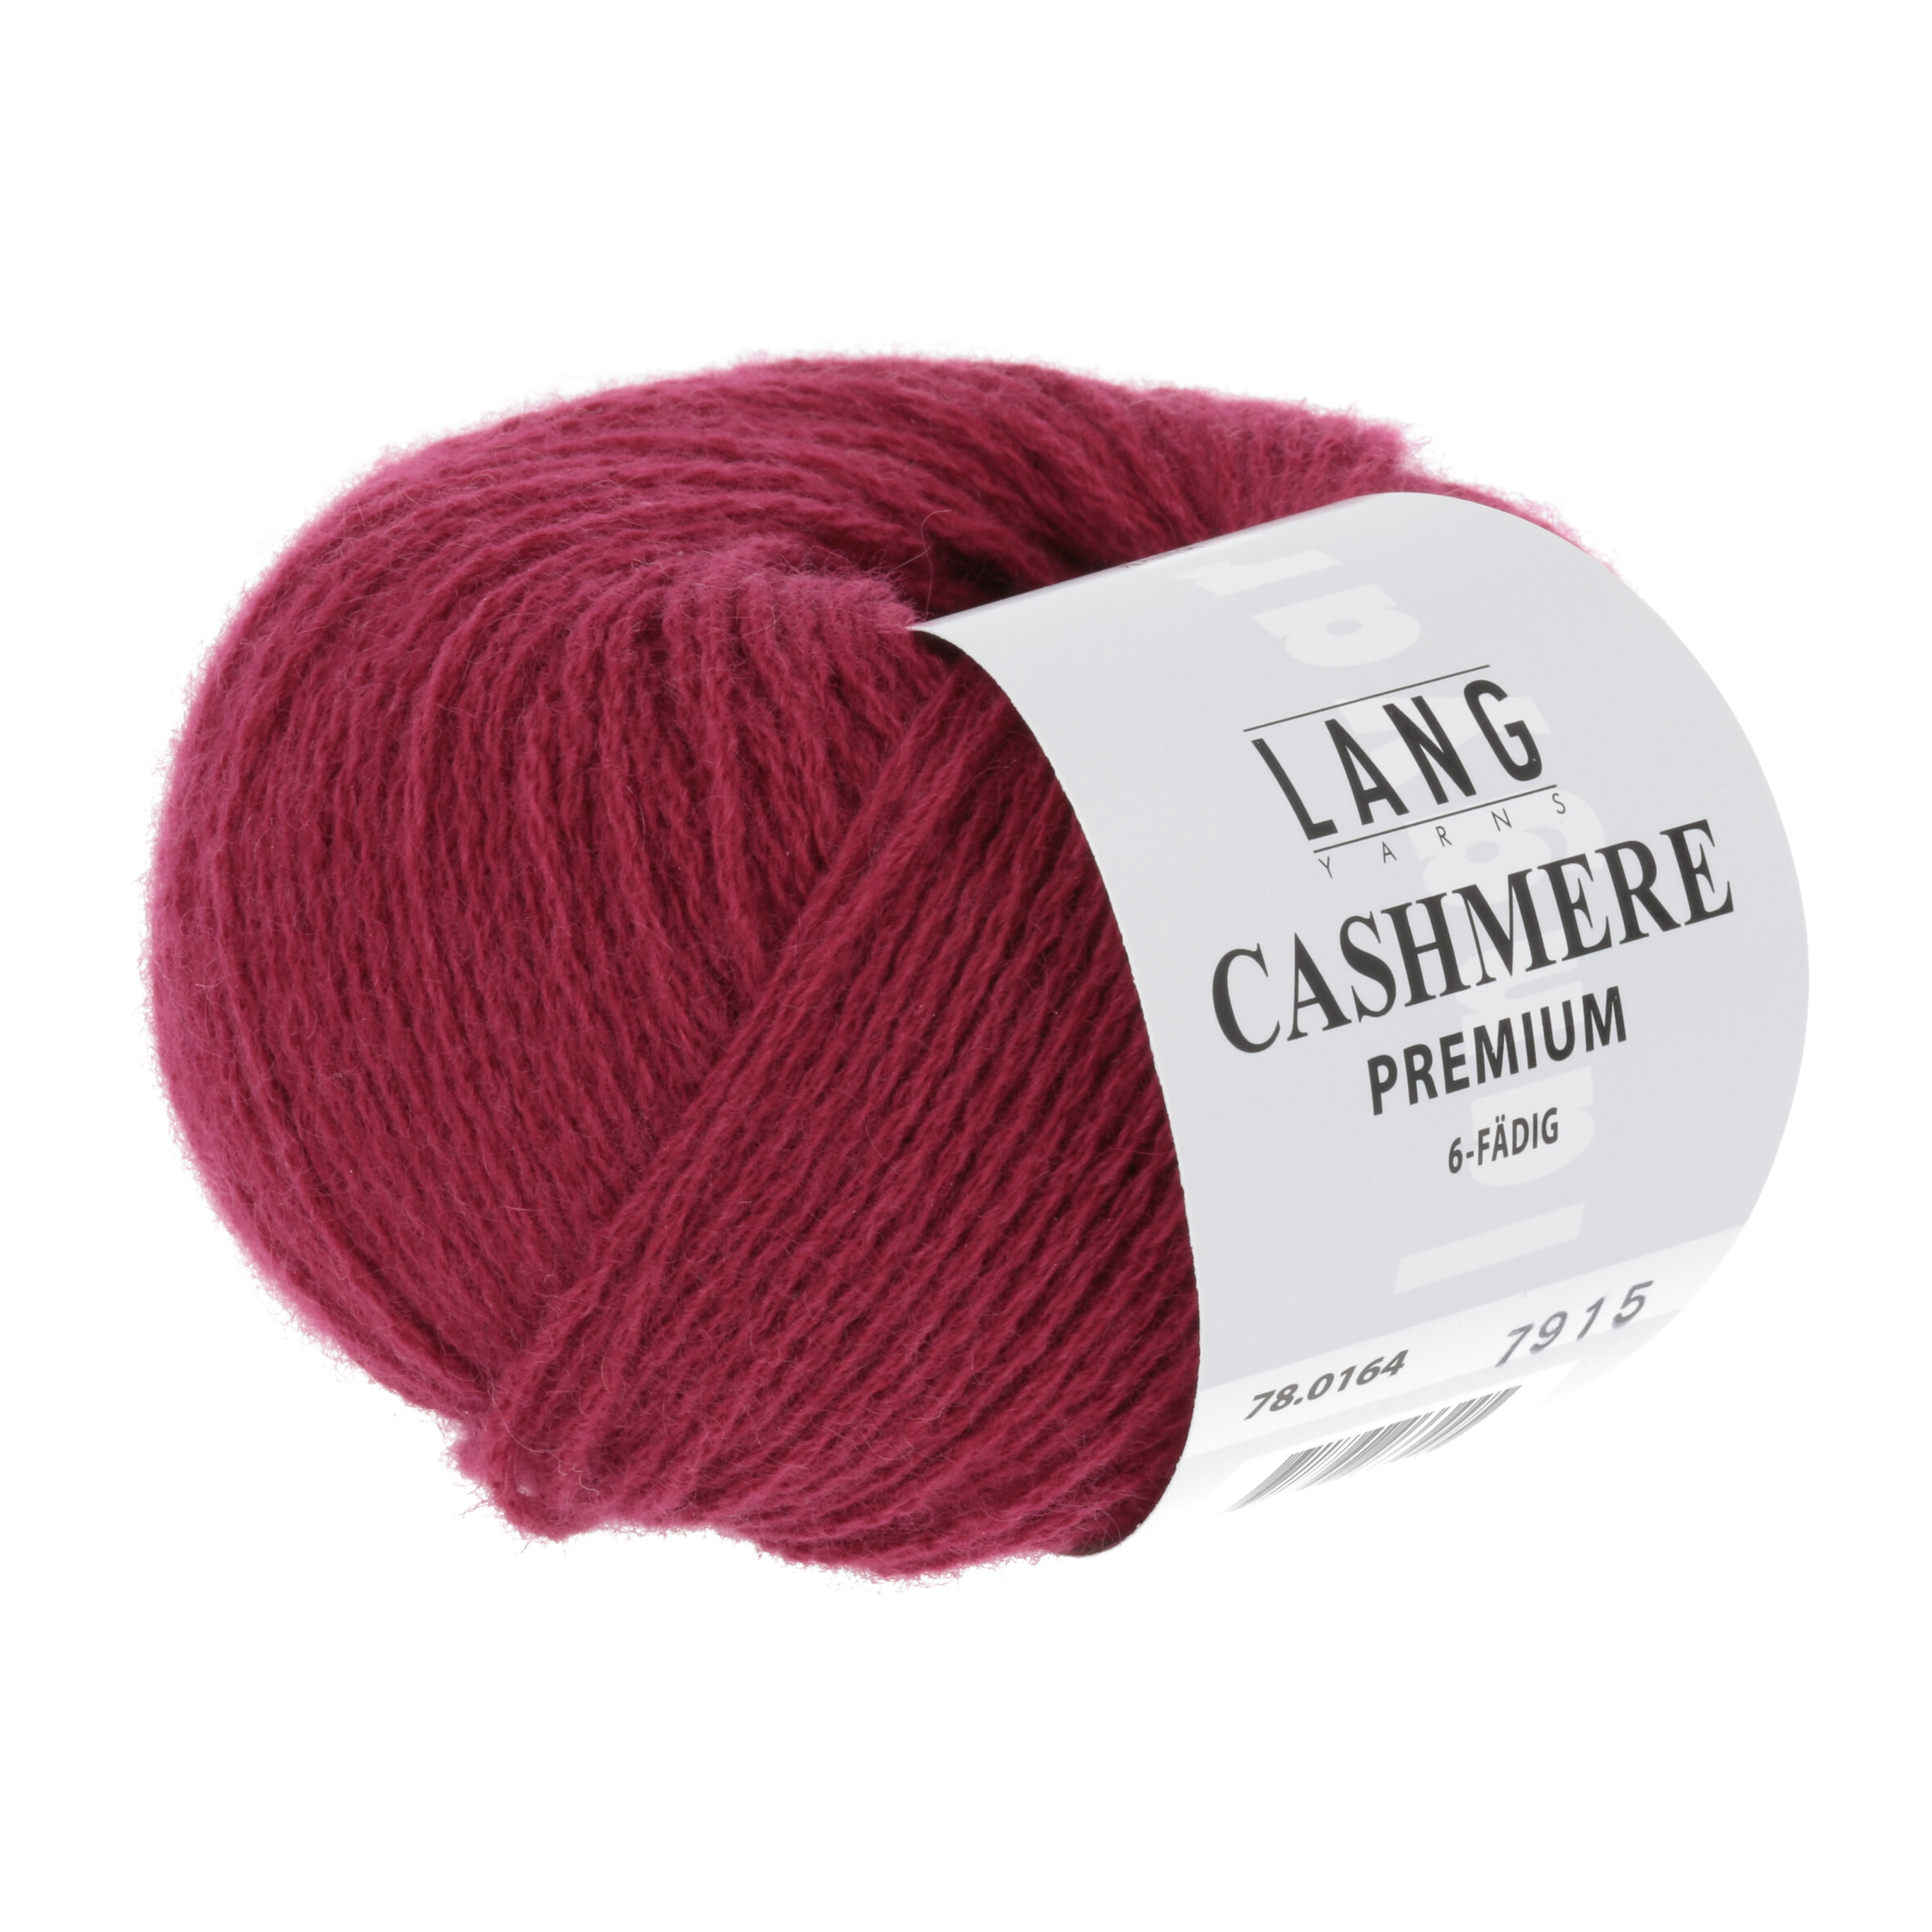 LANG Cashmere Premium 164 weinrot